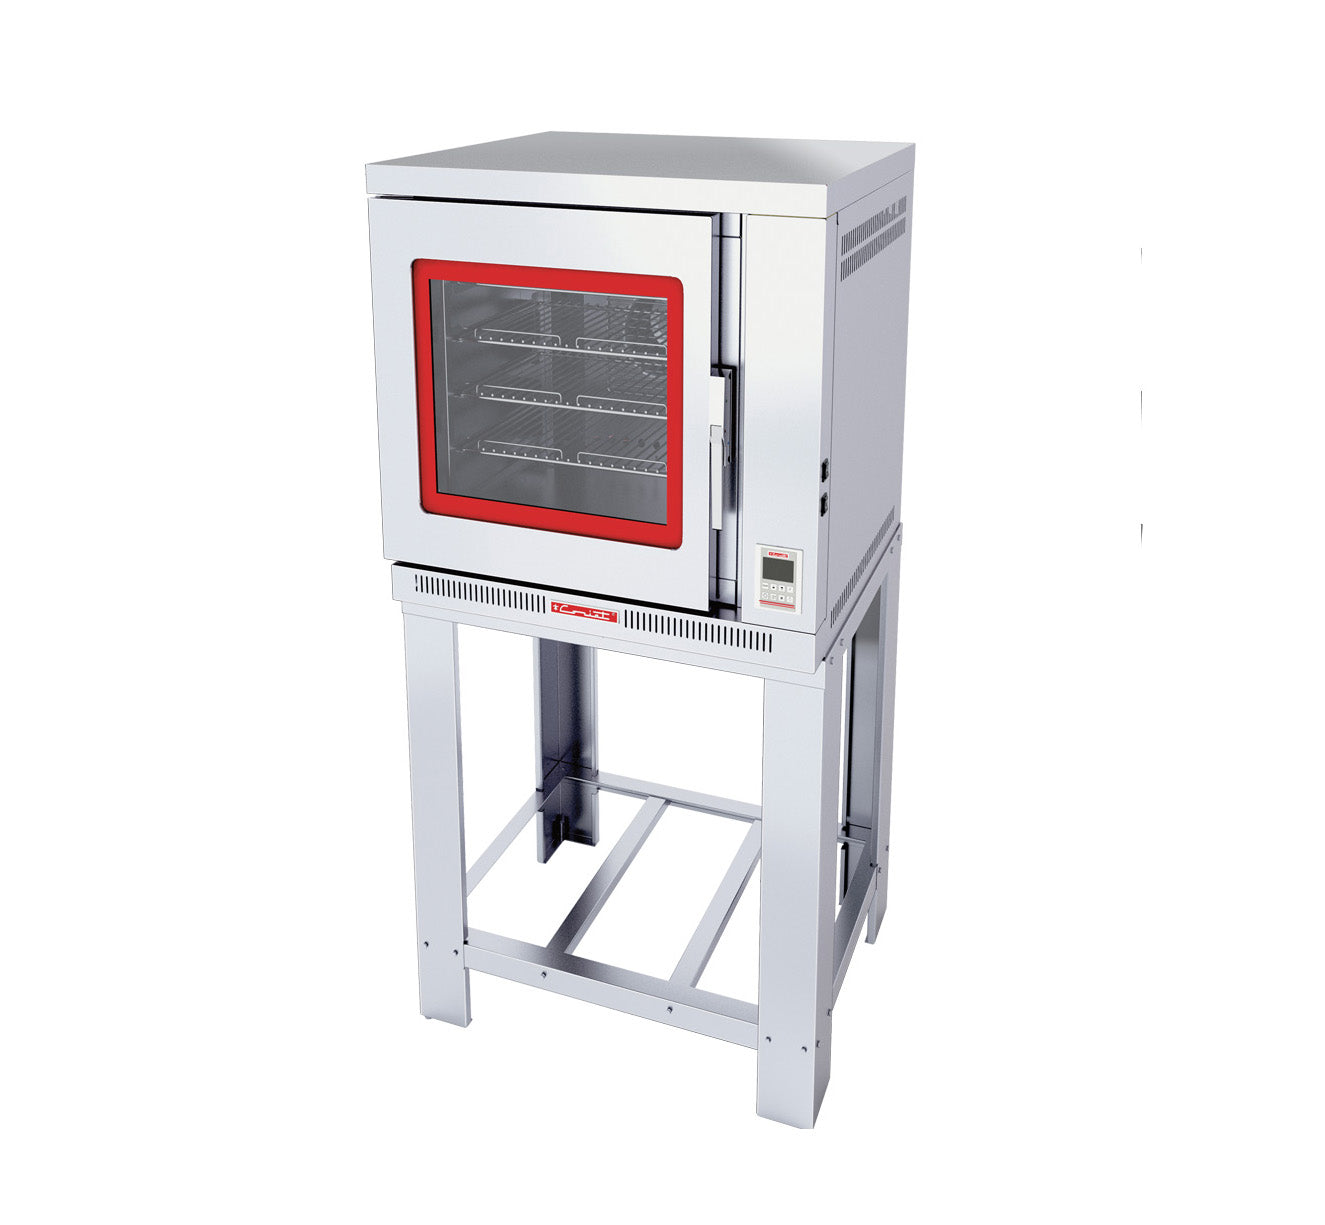 Comprar temporizador de cocina digital con alarma de acero inox Ibili